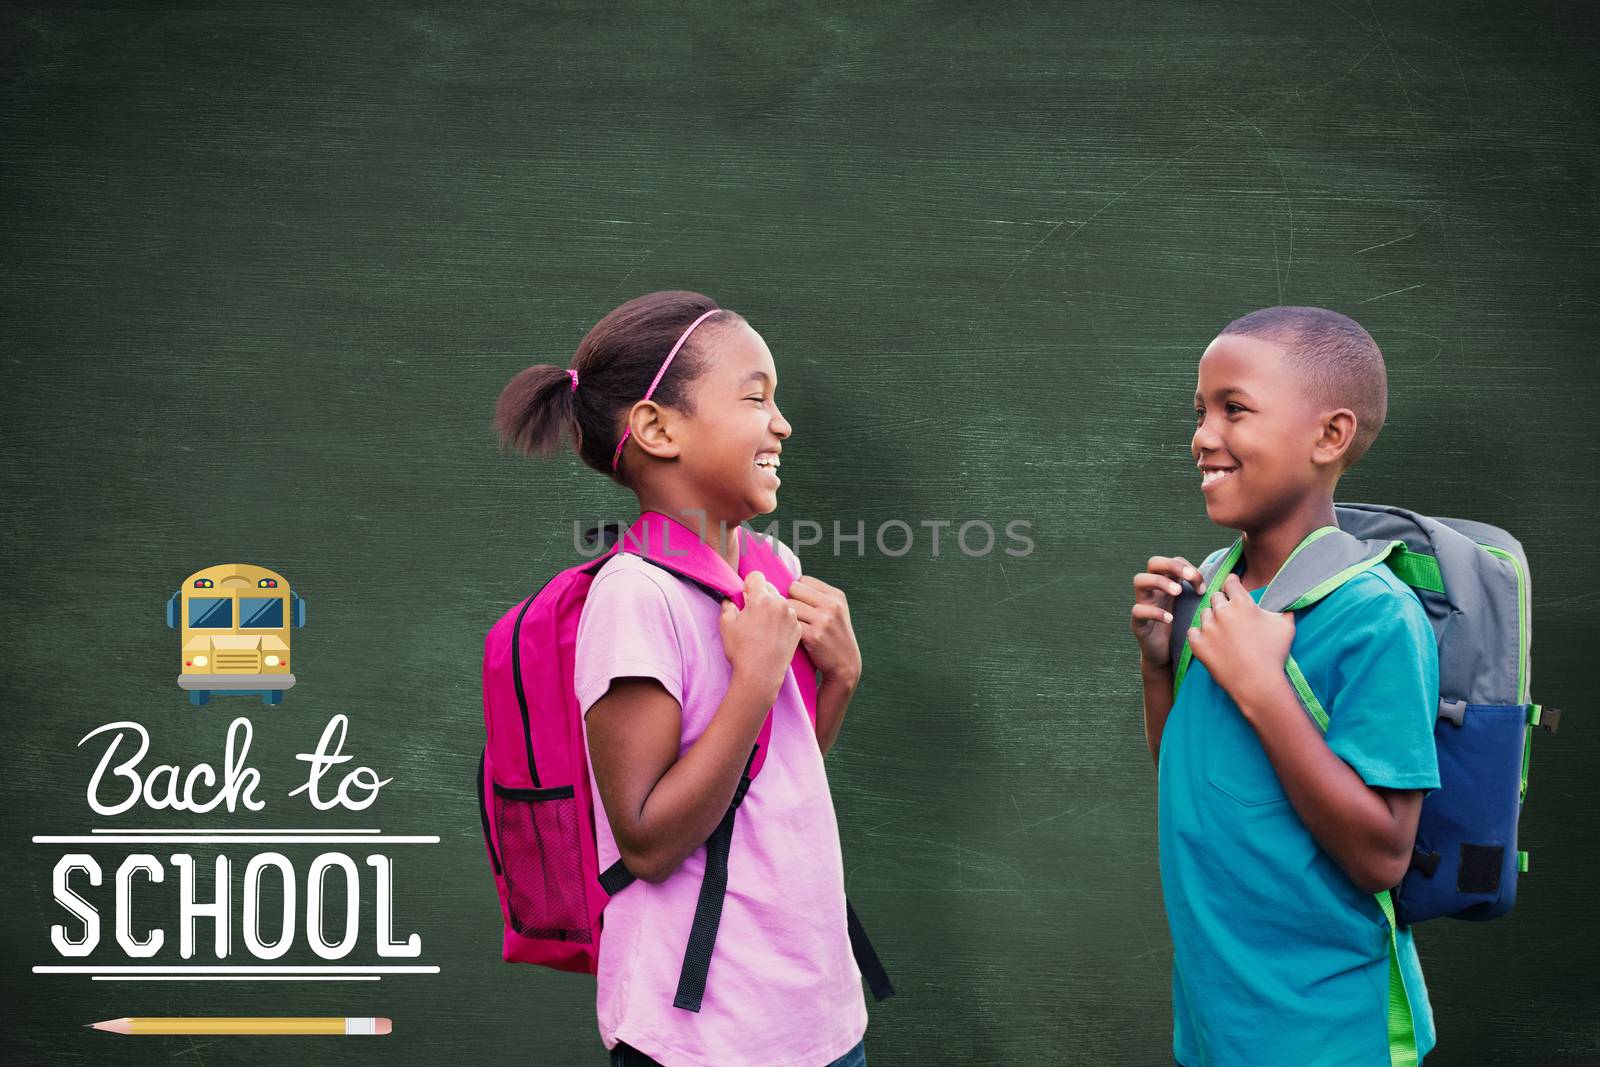 Smiling pupils against green chalkboard